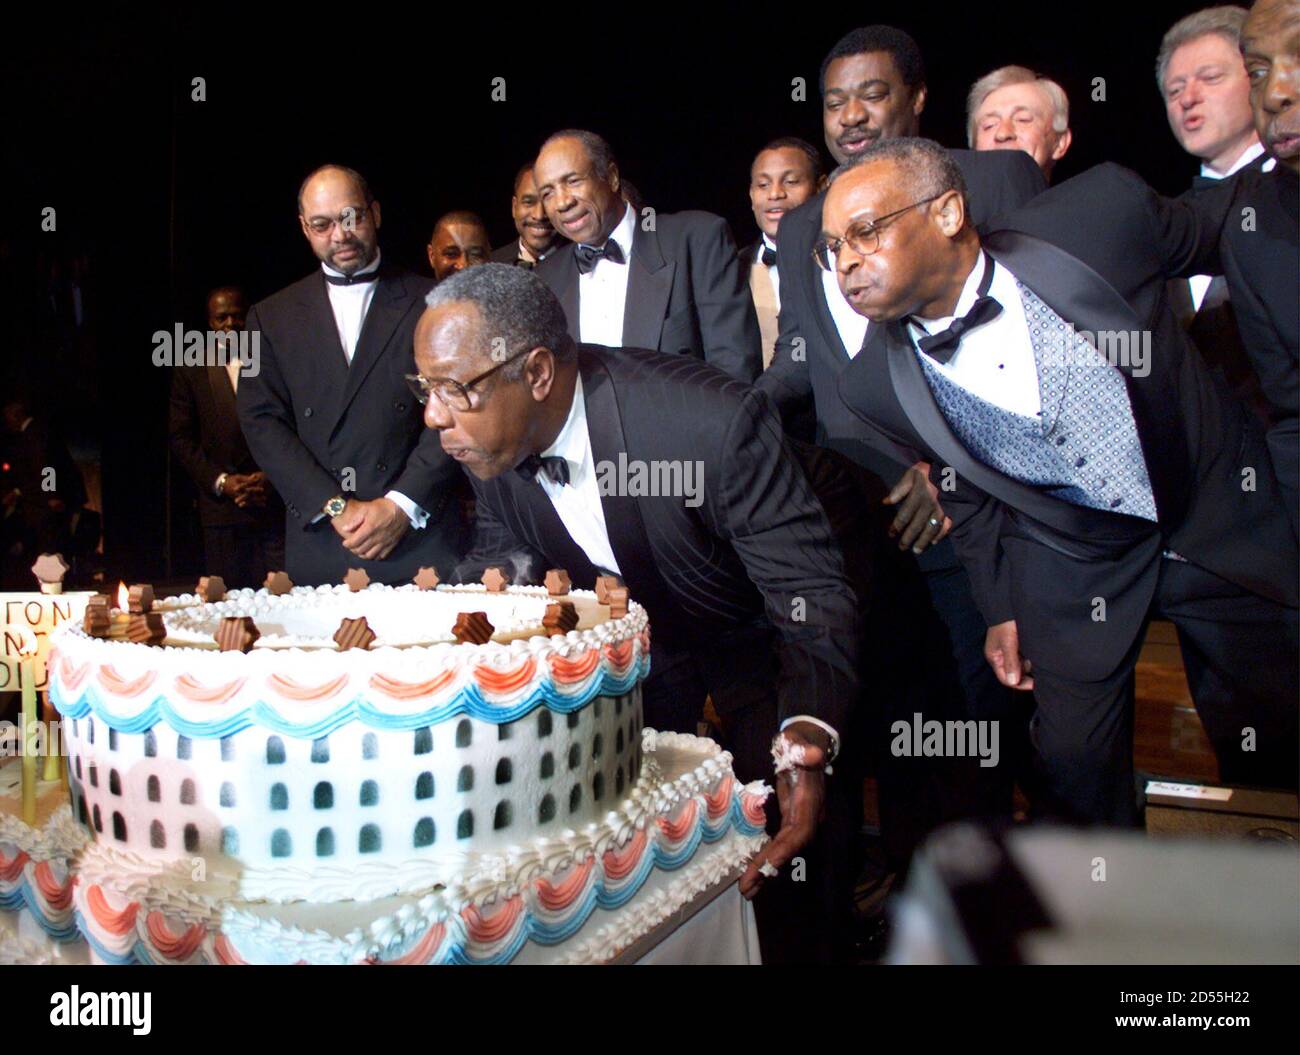 El presidente Bill Clinton observa (arriba, derecha) como Hank Aaron sopla  velas de cumpleaños de su pastel de cumpleaños, con forma similar al  estadio del condado de Fulton de Atlanta 5 de